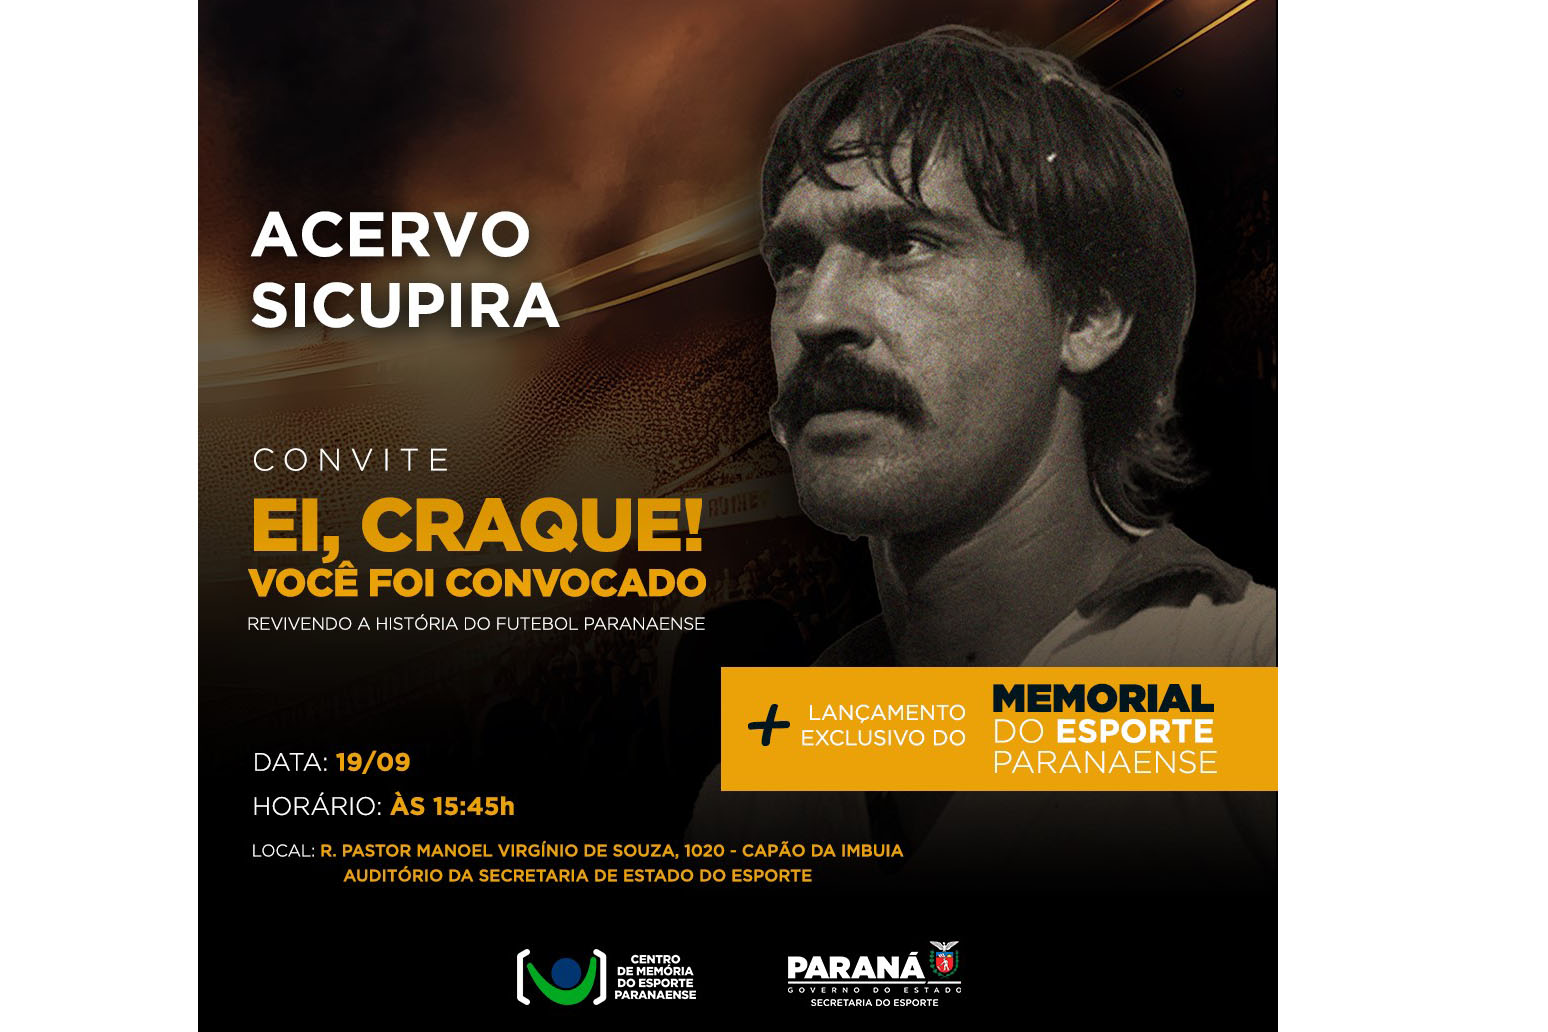 Evento “Ei Craque” reúne apaixonados por futebol e homenageia Sicupira na próxima terça-feira (19)